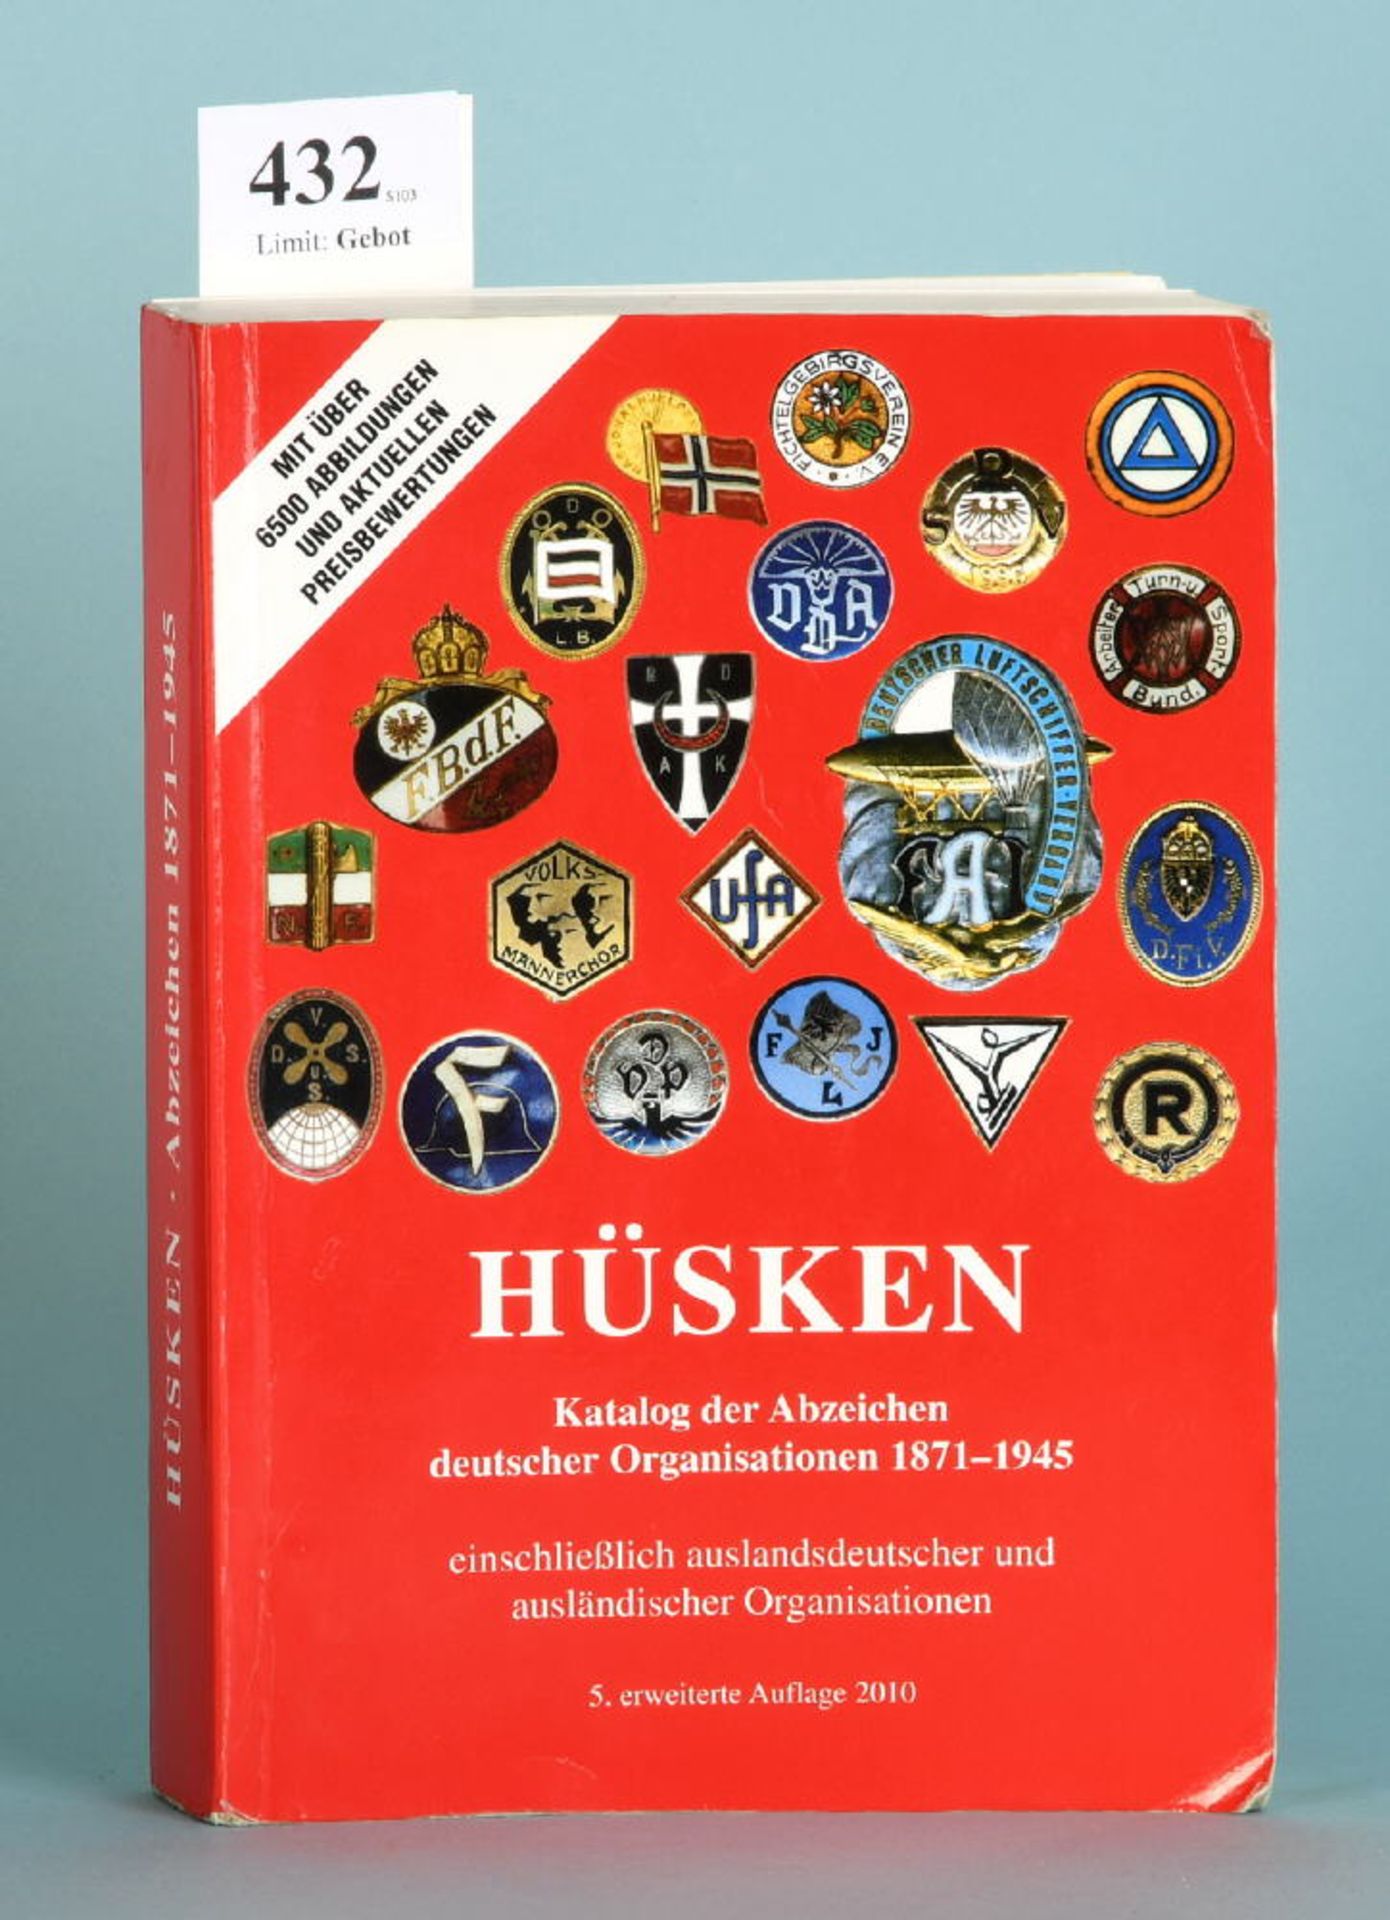 Hüsken, André "Katalog der Abzeichen deutscher...""...Organisationen 1871-1945 einschließlich